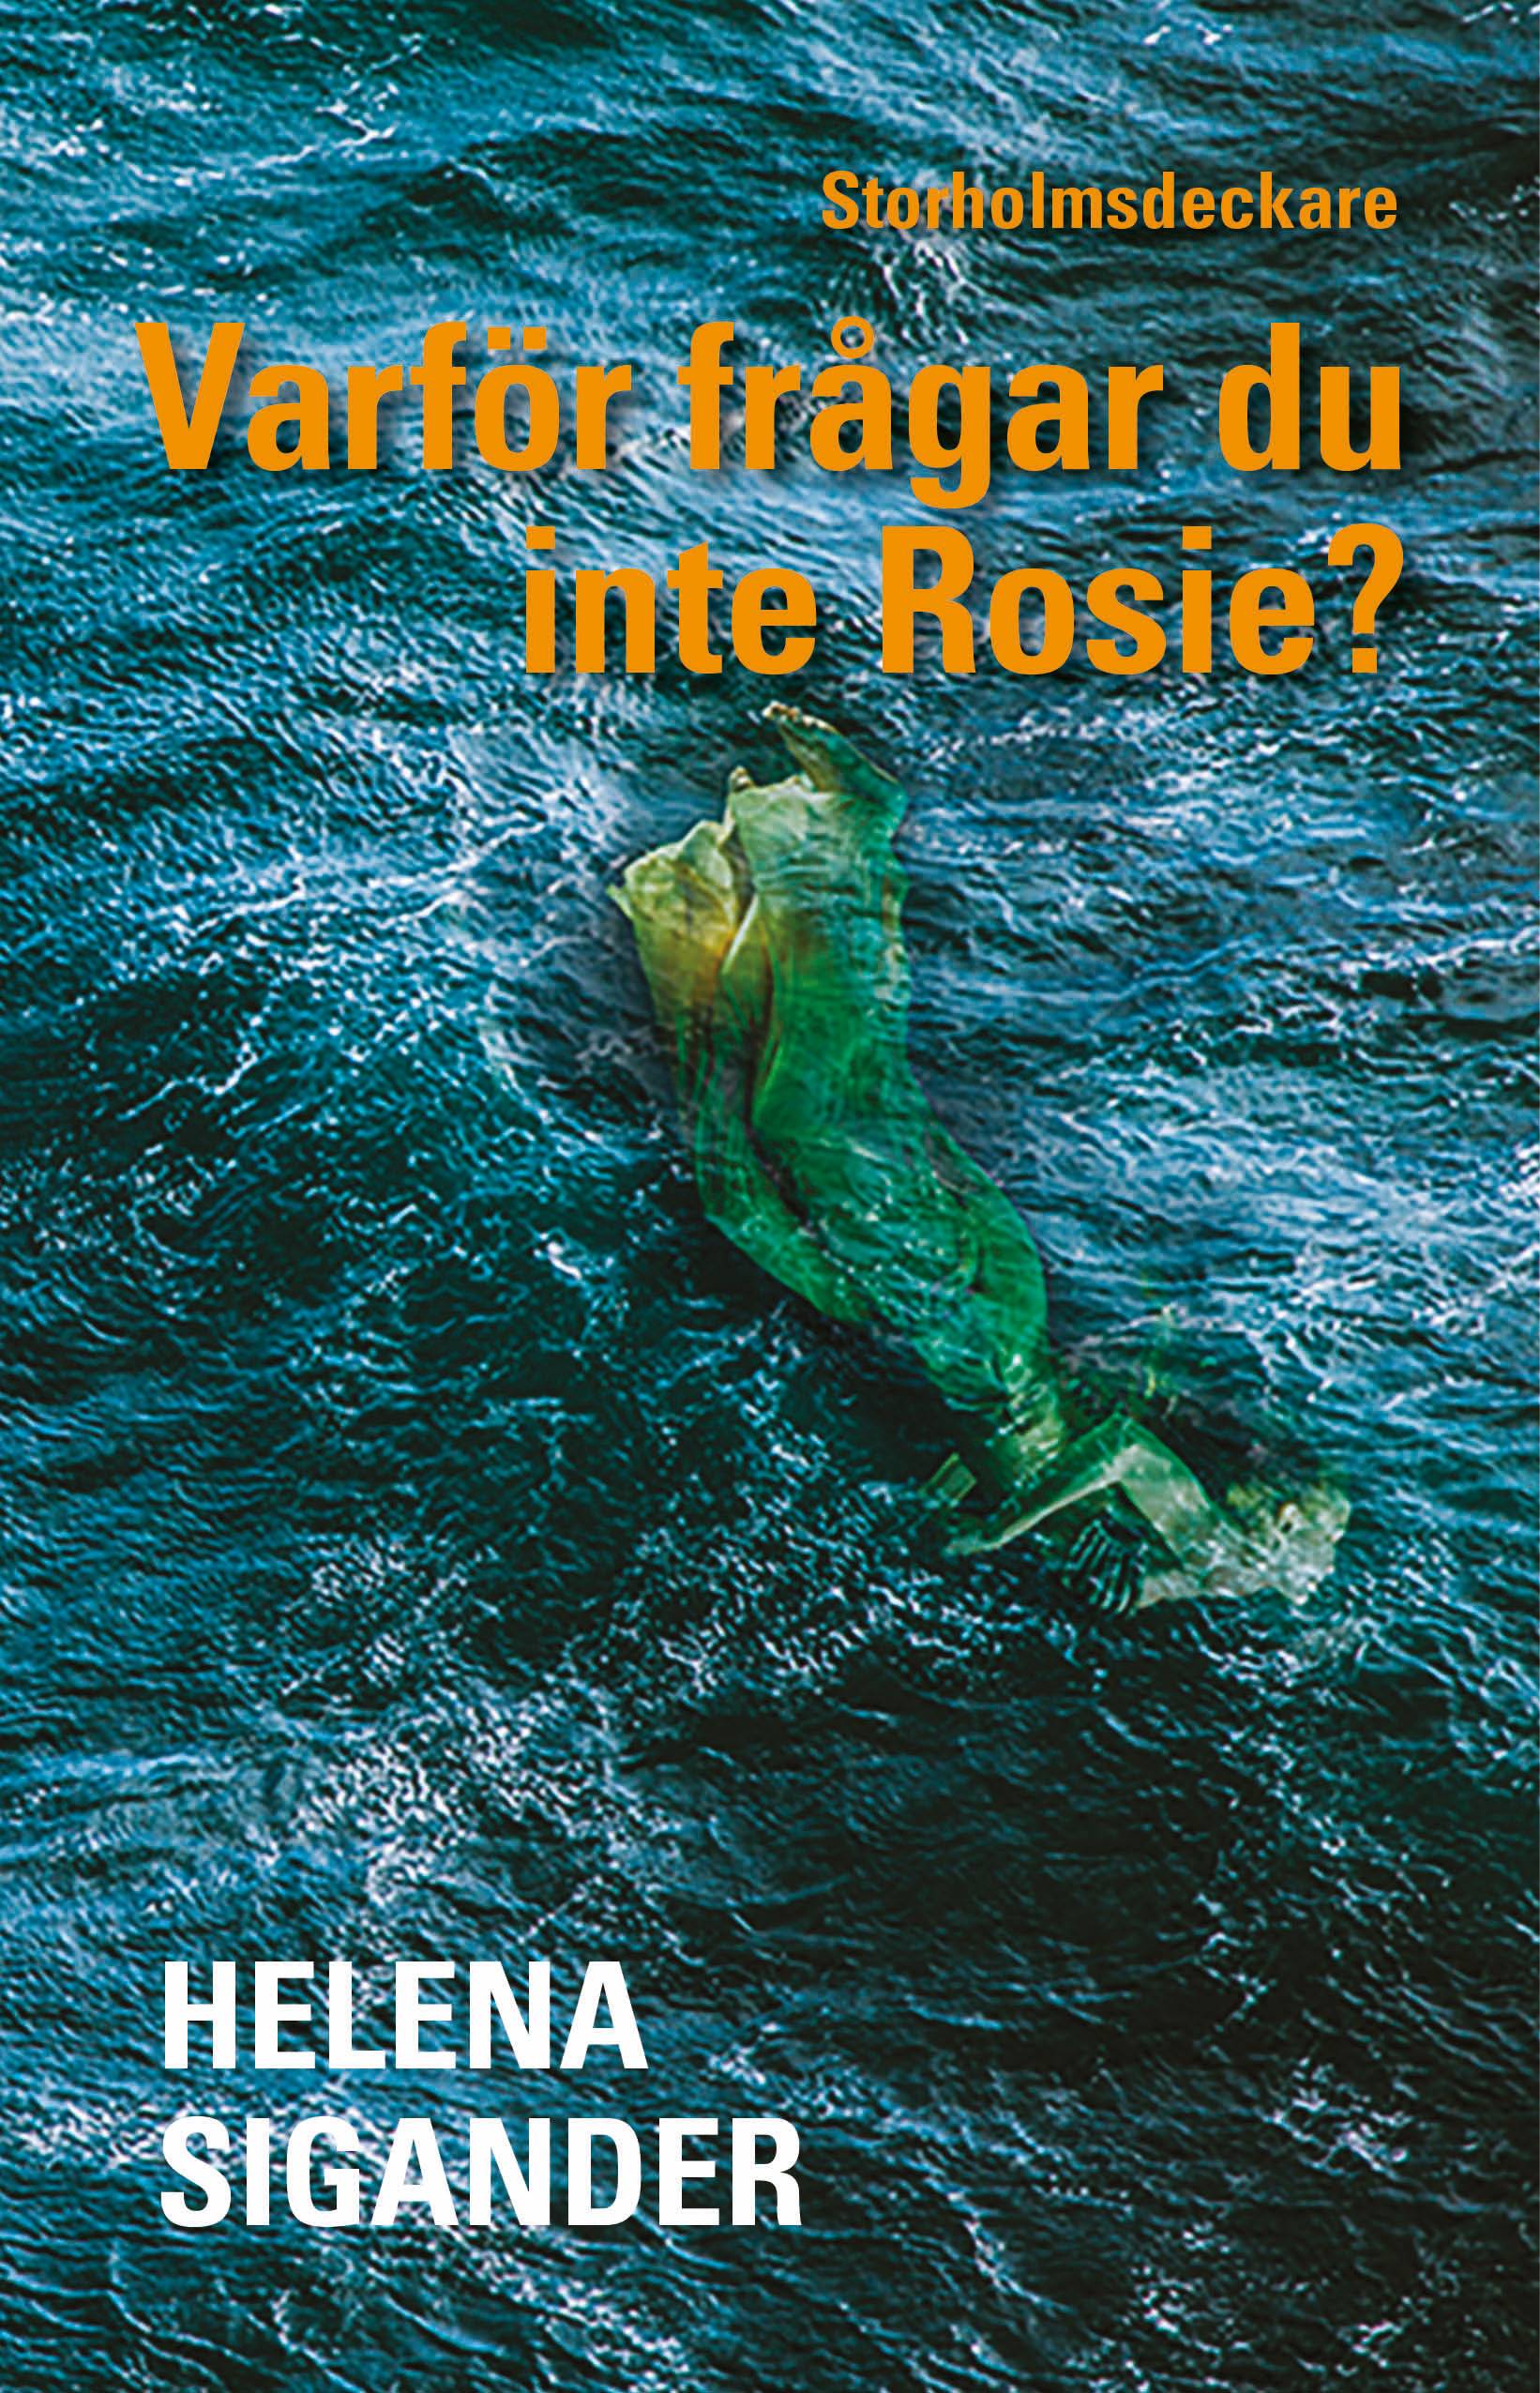 Varför frågar du inte Rosie?